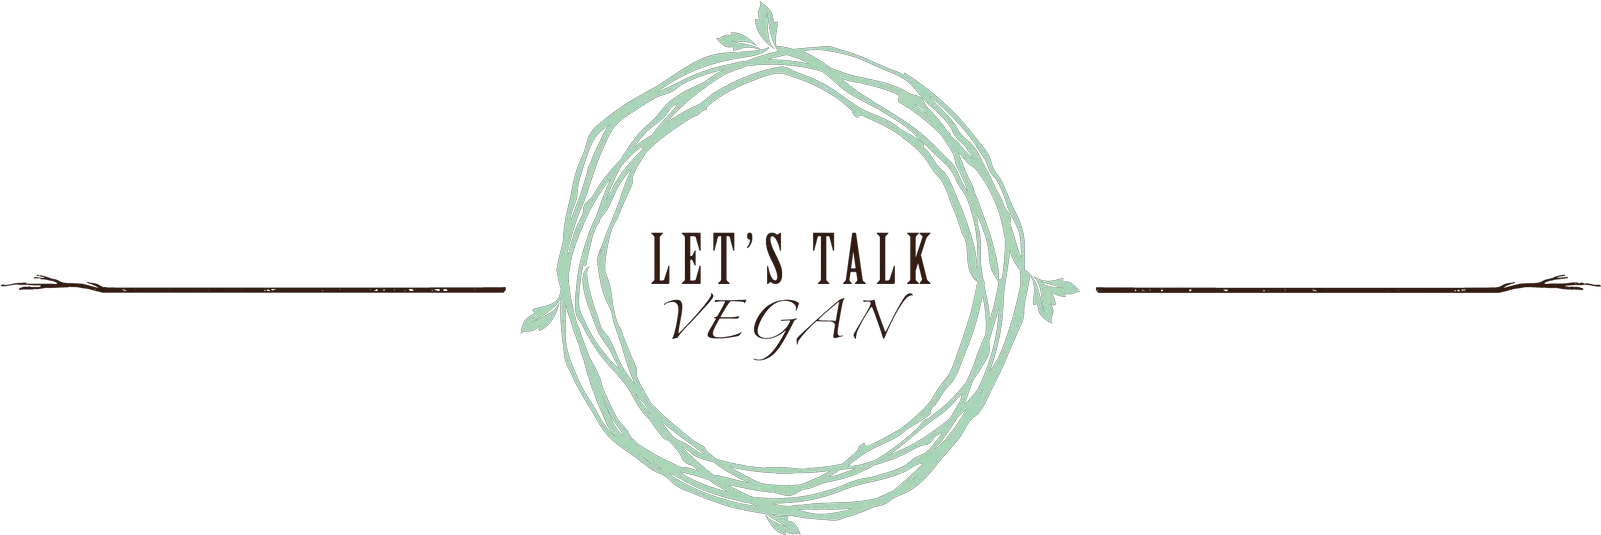 Letu0027s Talk Vegan Home Albin Polasek House And Studio Png Vegan Logo Png